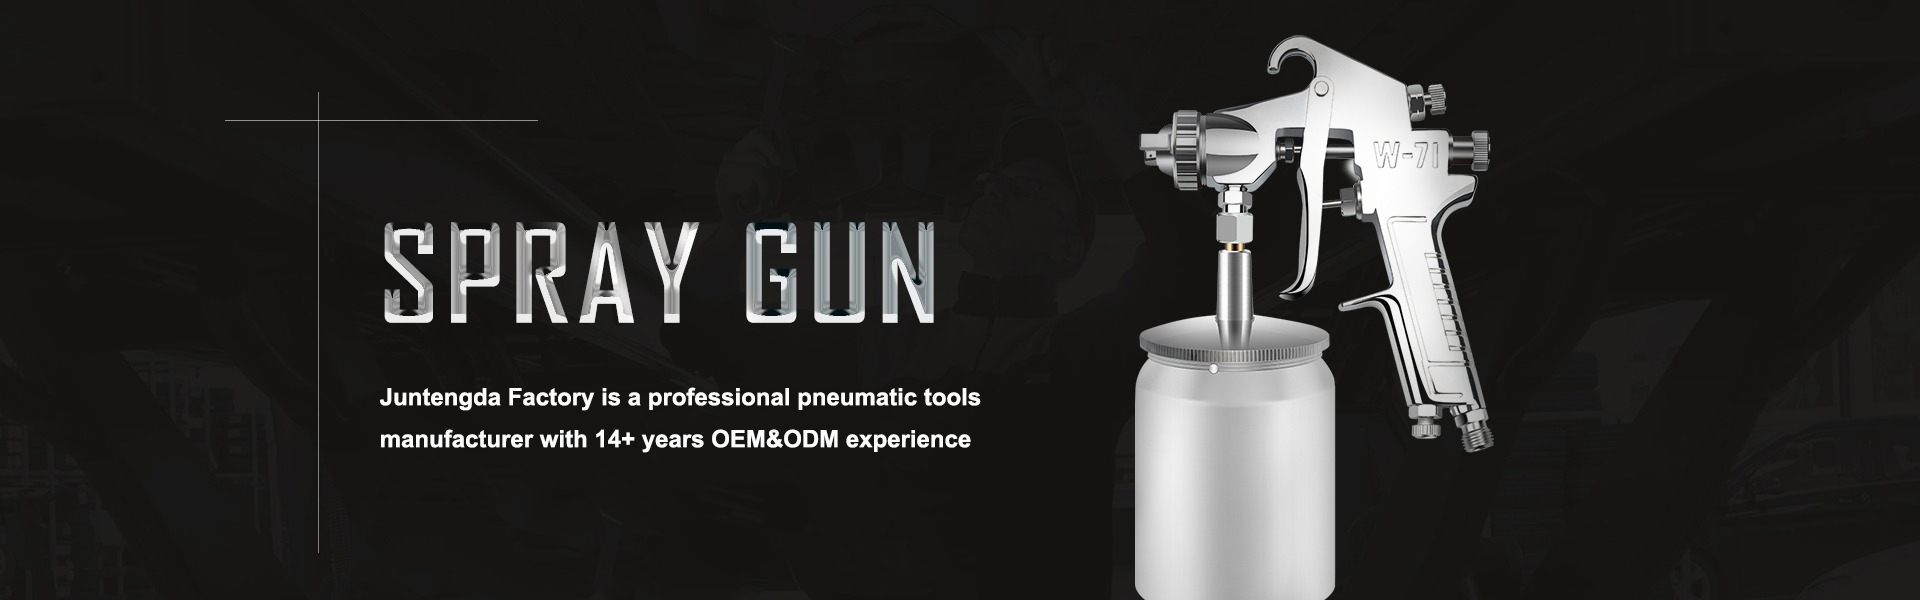 Fabricante profesional de herramientasneumáticas, pistola de pulverización, lijador de aire,Dongguan Liaobu Juntengda Pneumatic Tools CO.,LTD